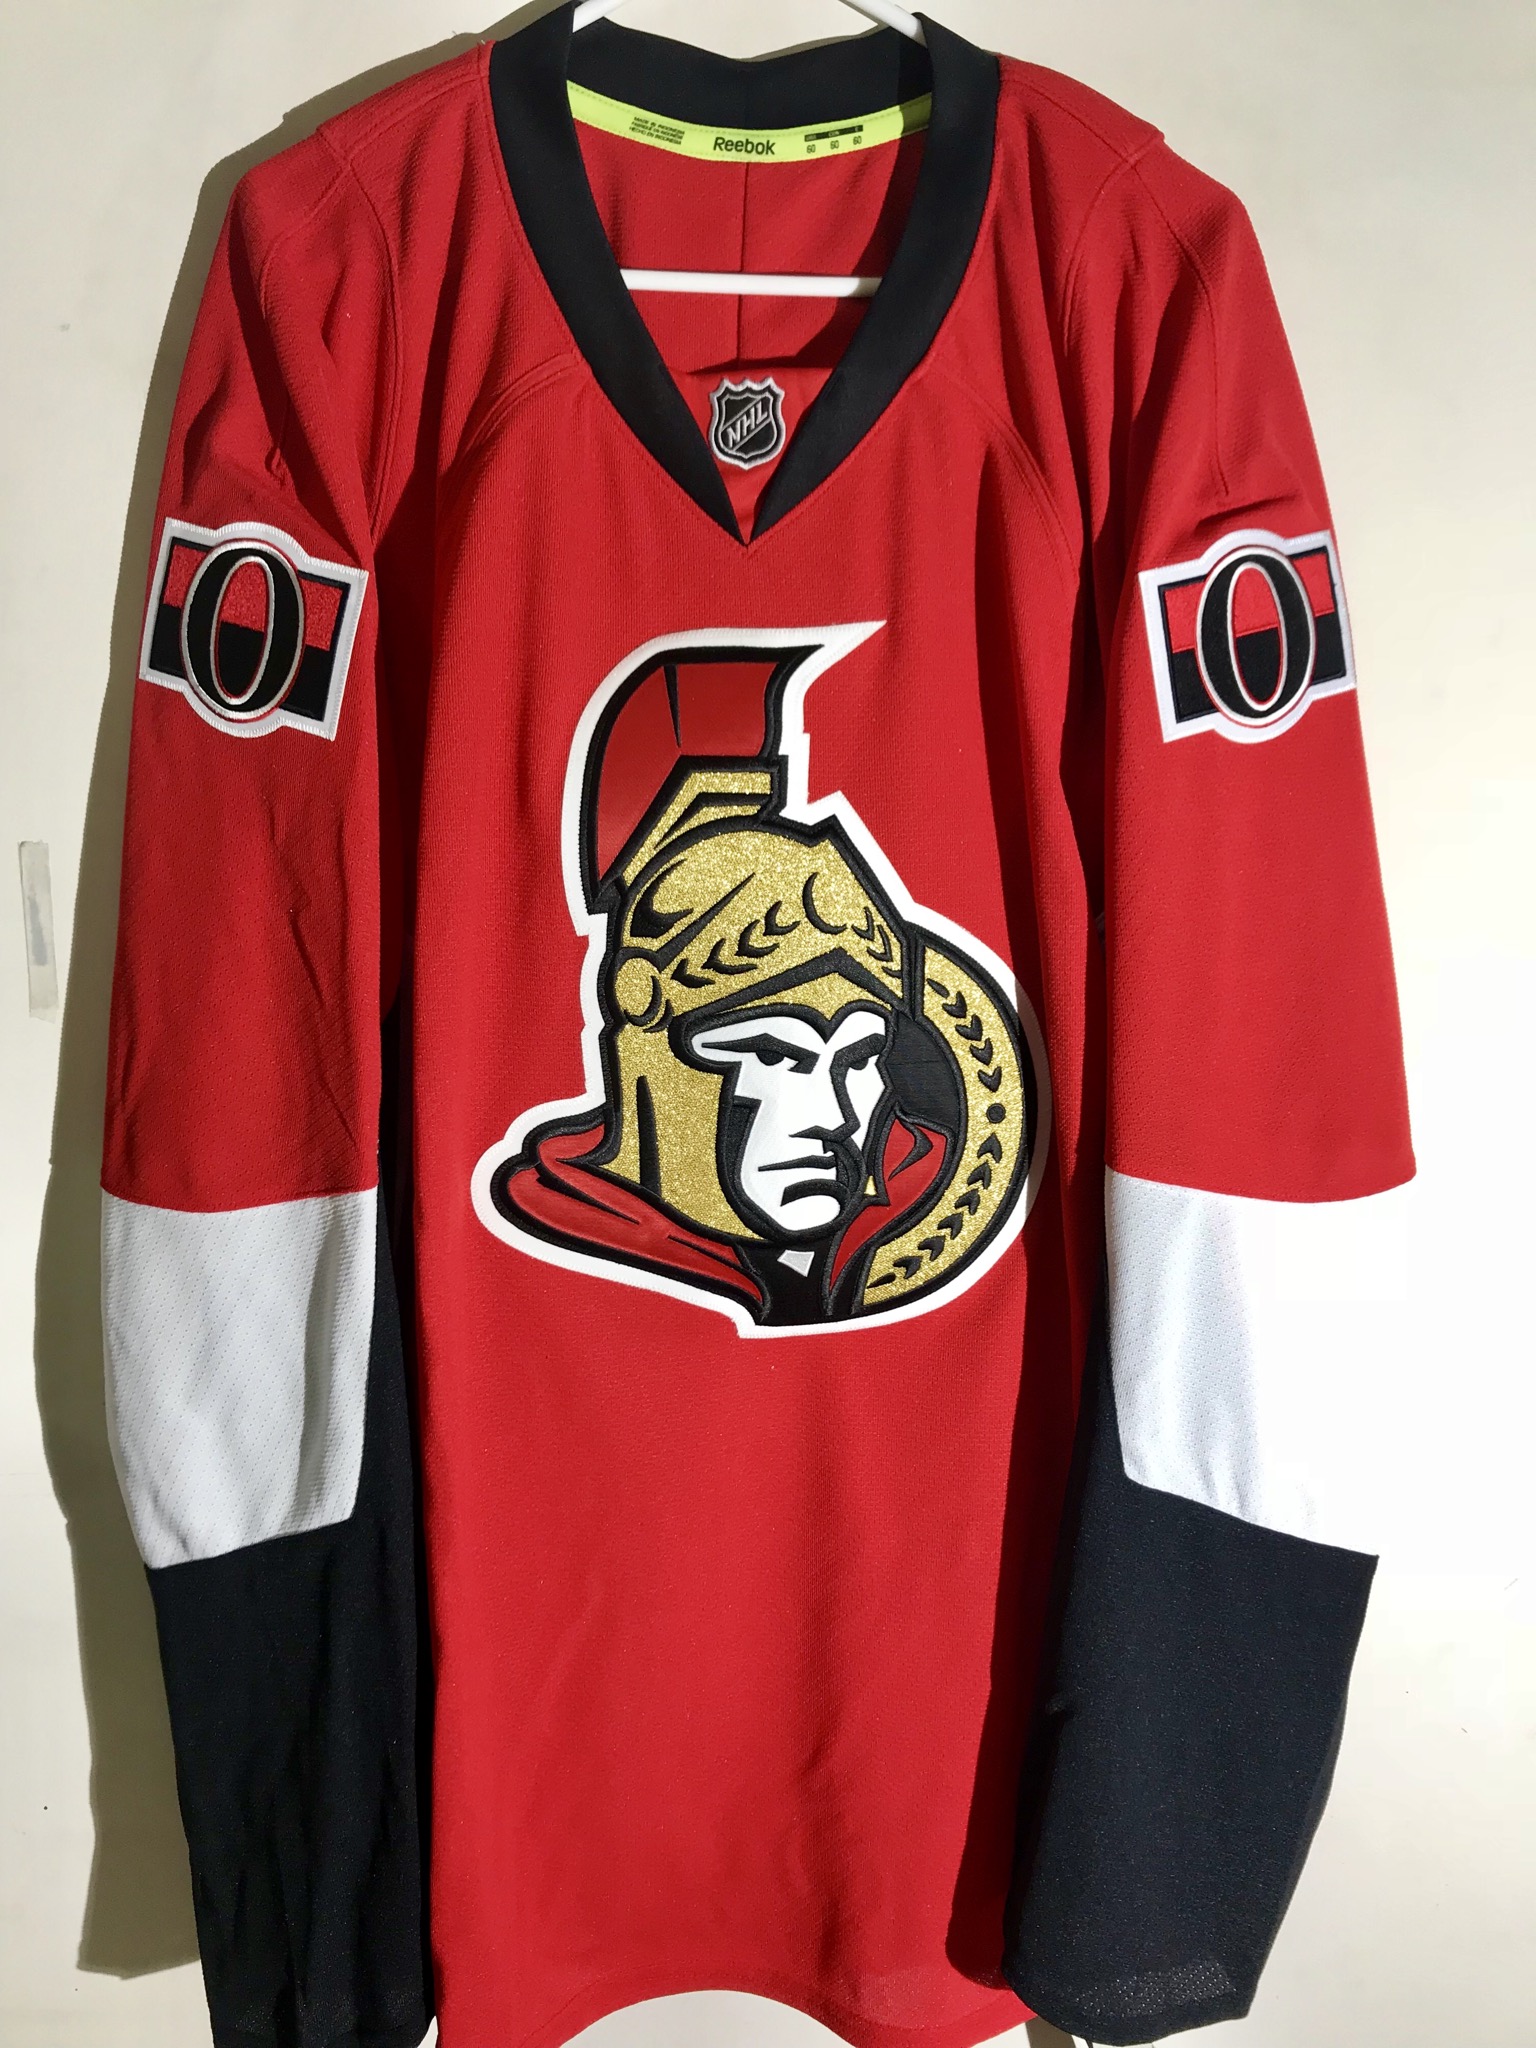 NHL Jersey Ottawa Senators Team Red sz 